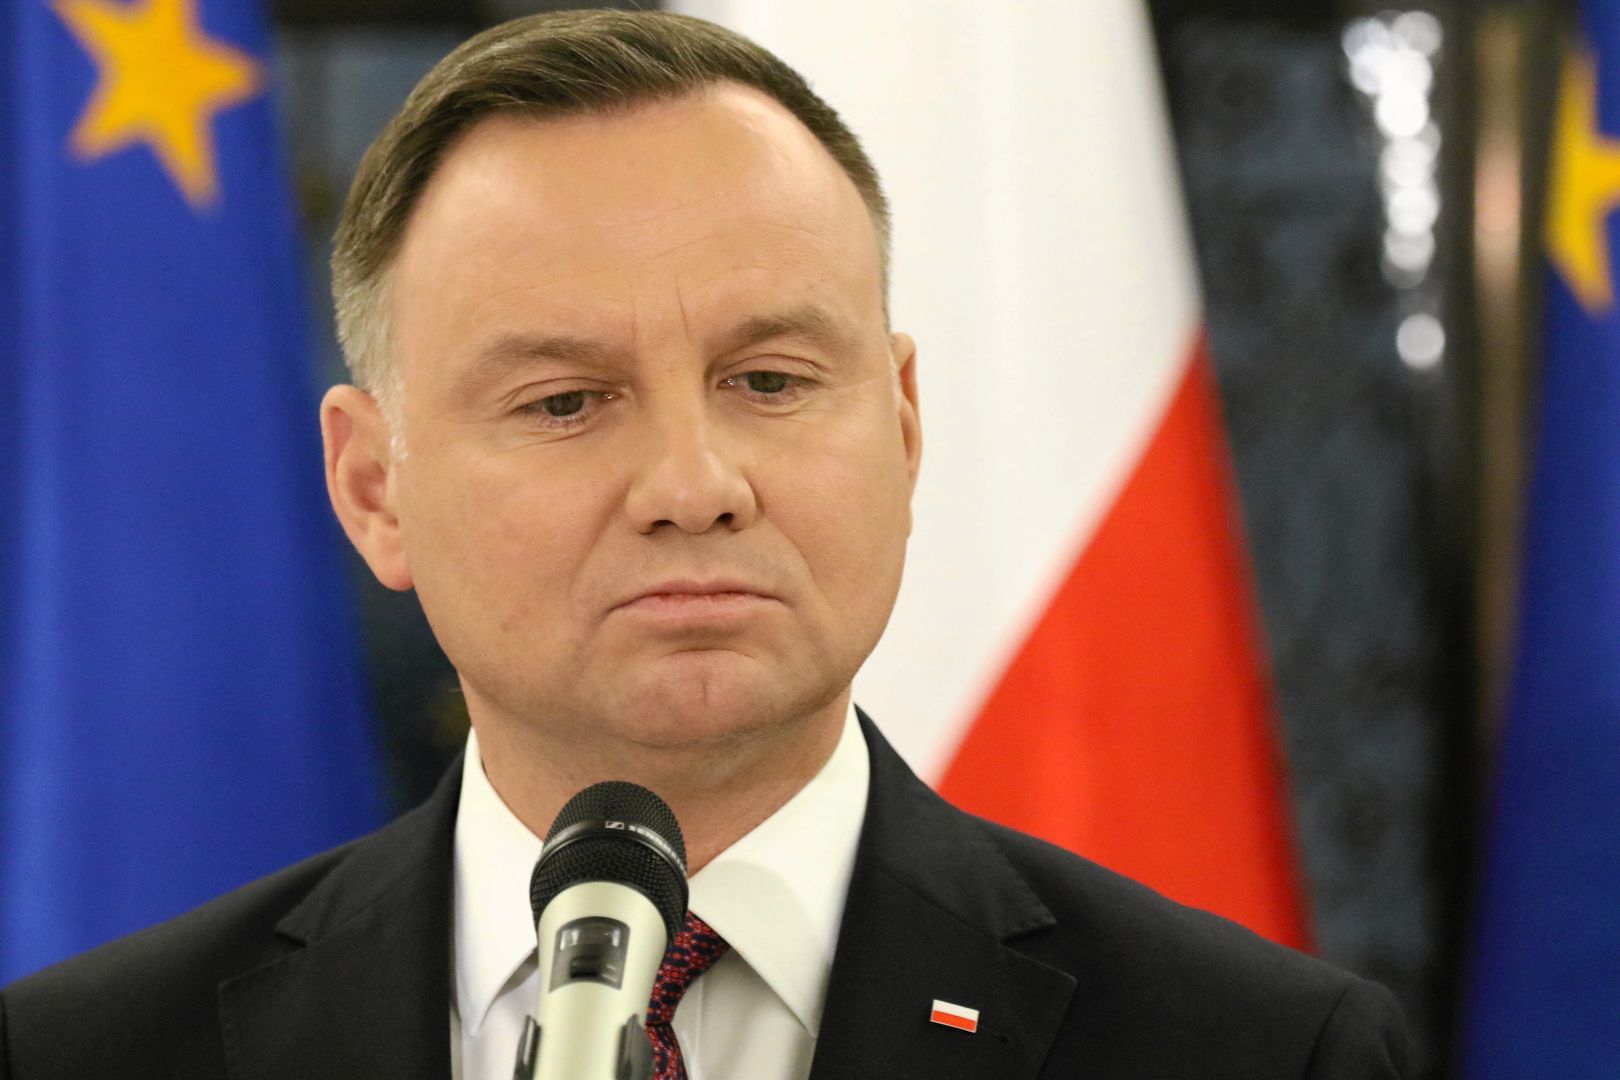 Andrzej Duda w wyborach prezydenckich 2020 zmierzy się m.in. z Małgorzatą Kidawą-Błońską